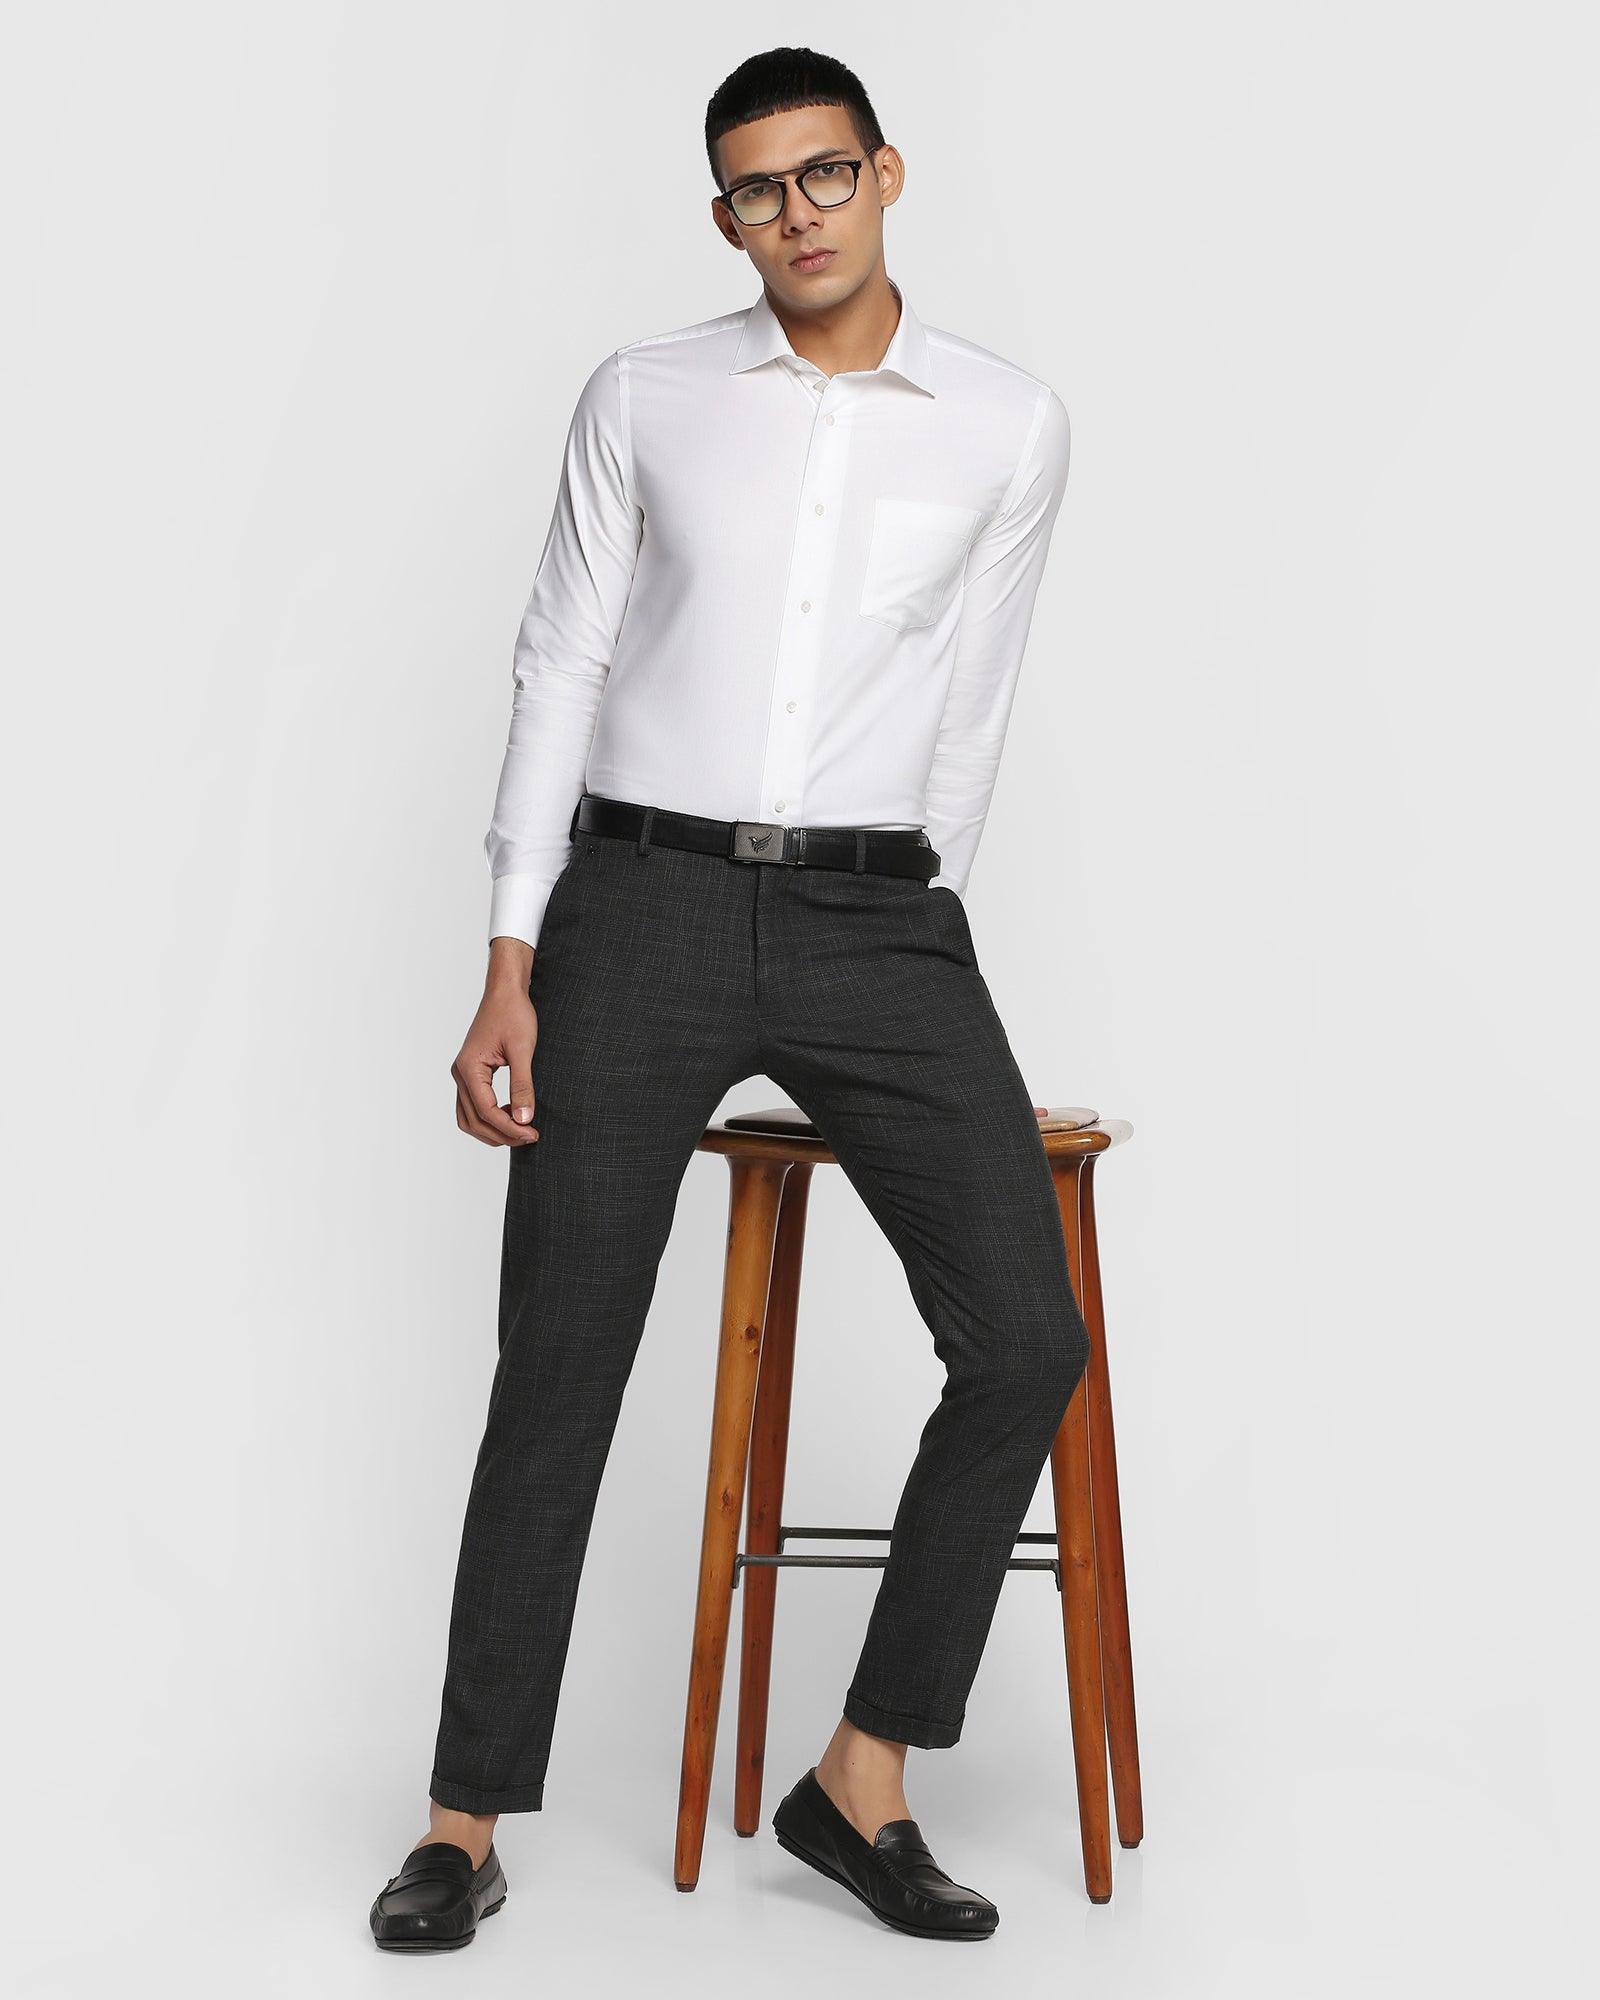 White Mens Cotton Corporate Uniform Shirt And Black Trousers Unstitch  Uniform Sarees